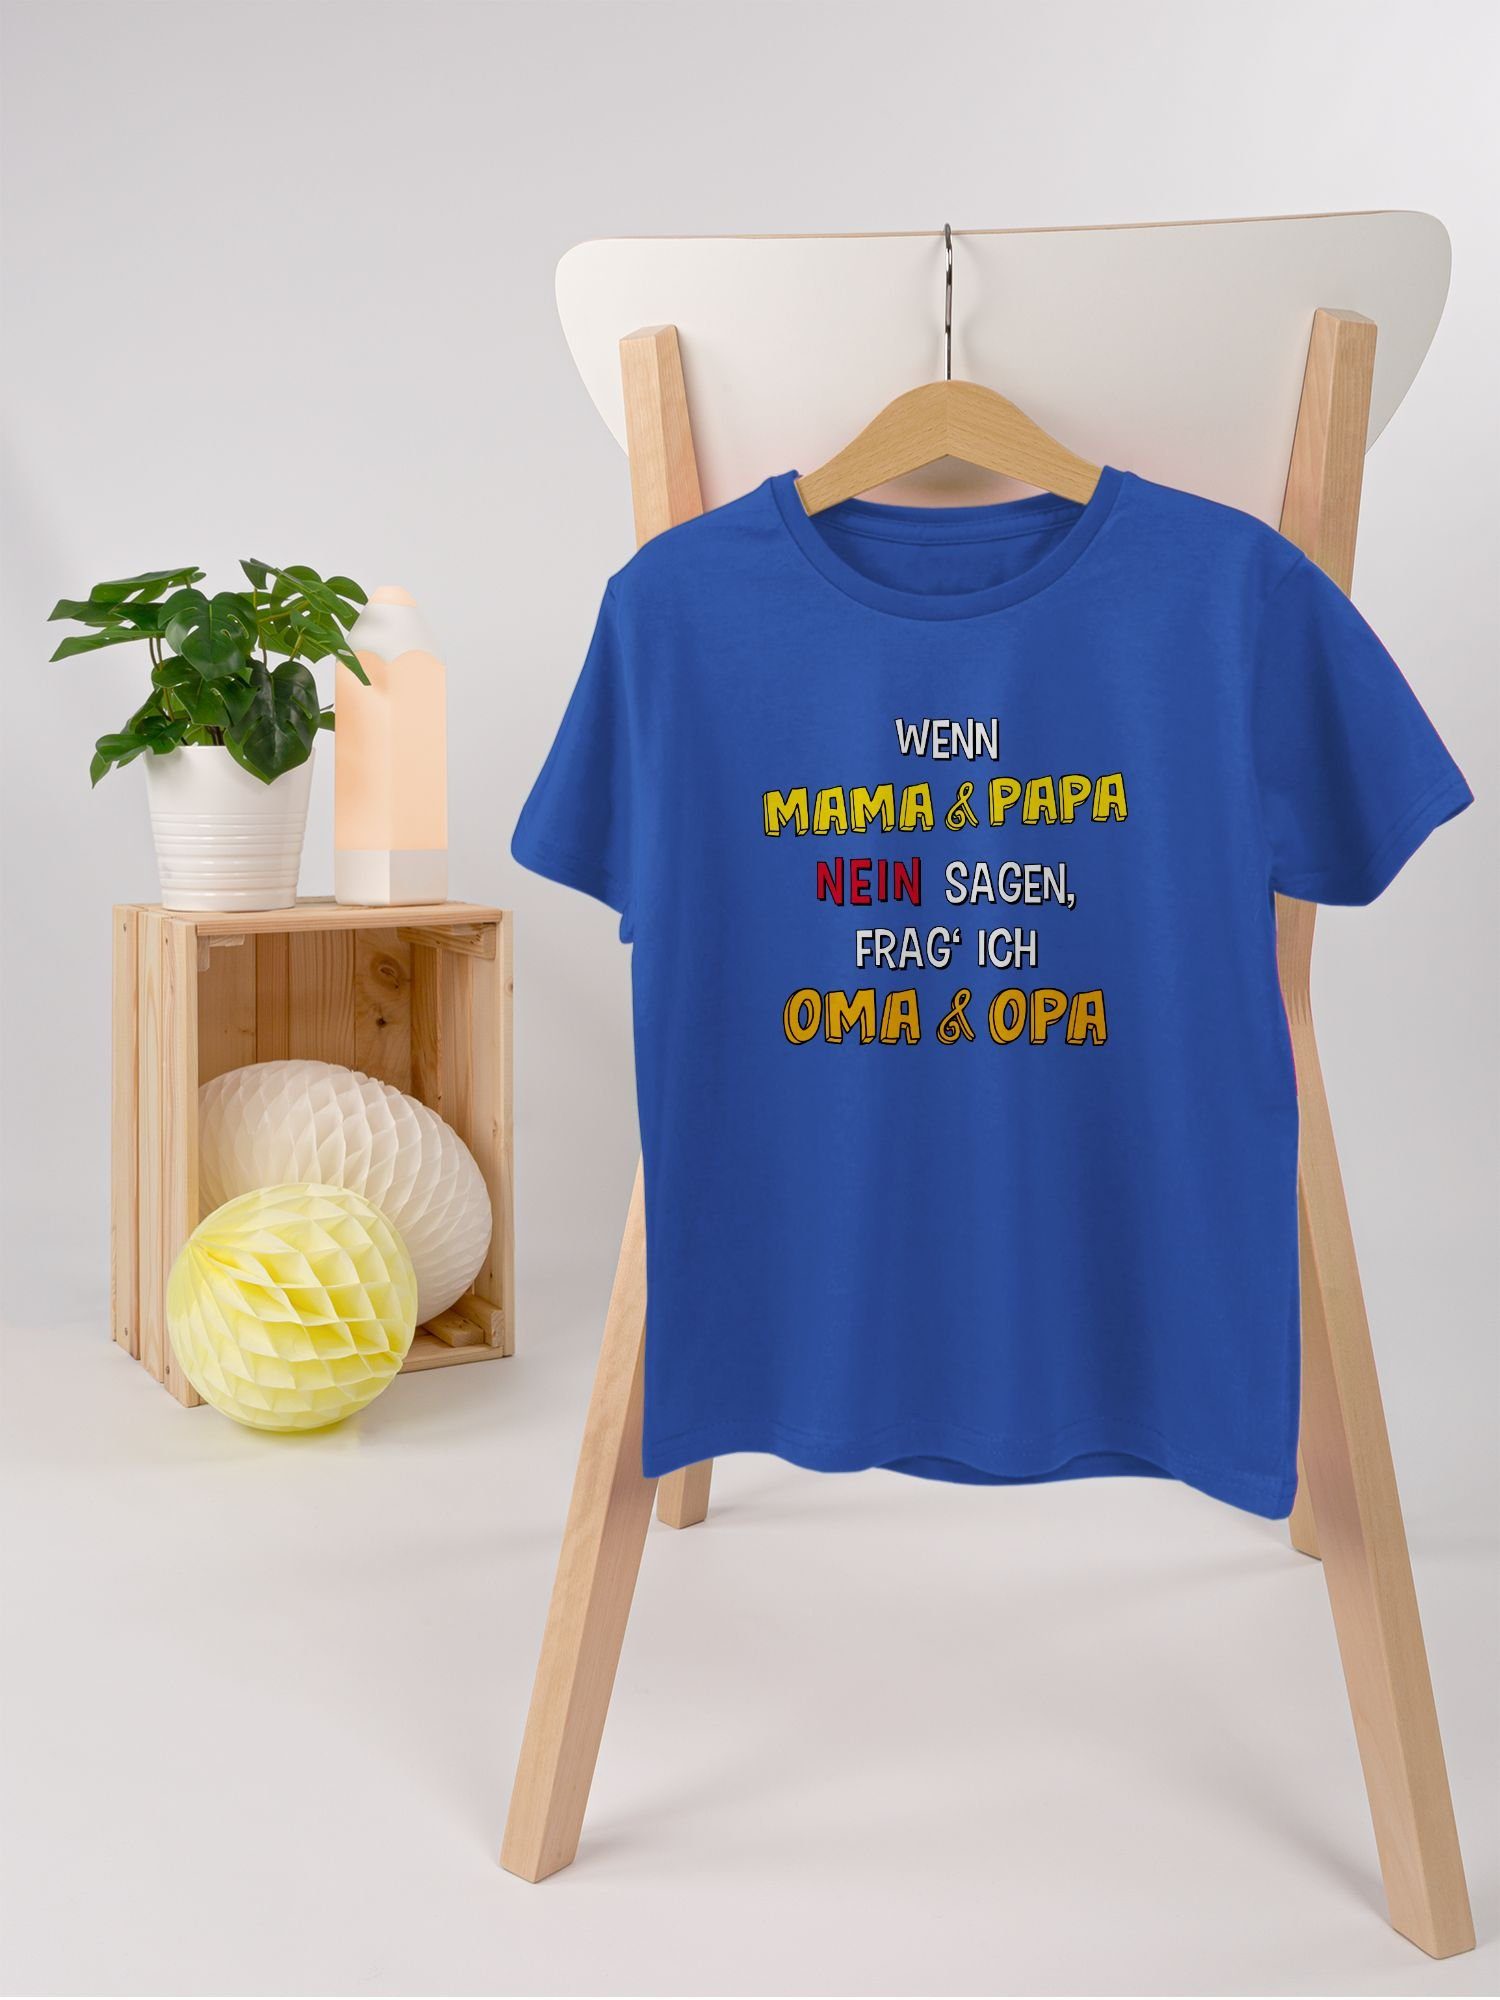 Statement frag' Wenn ich und Shirtracer 1 und nein Kinder Papa Royalblau T-Shirt Opa Oma sagen, Mama Sprüche